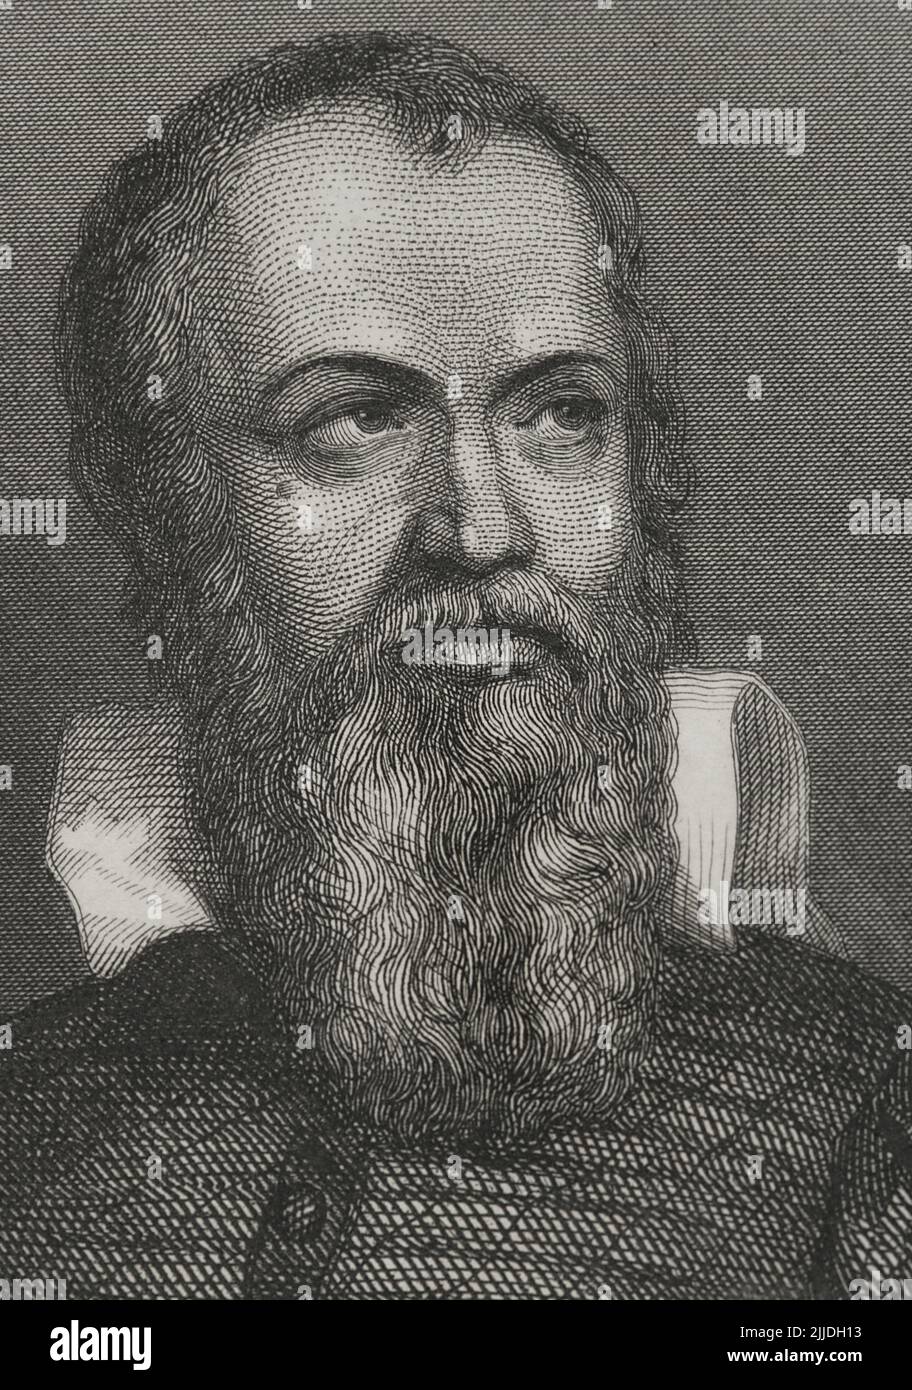 Galileo Galilei (1564-1642). Italienischer Astronom, Mathematiker und Physiker. Hochformat. Gravur von Geoffroy. „Historia Universal“, von César Cantú. Lautstärke V. 1856. Stockfoto